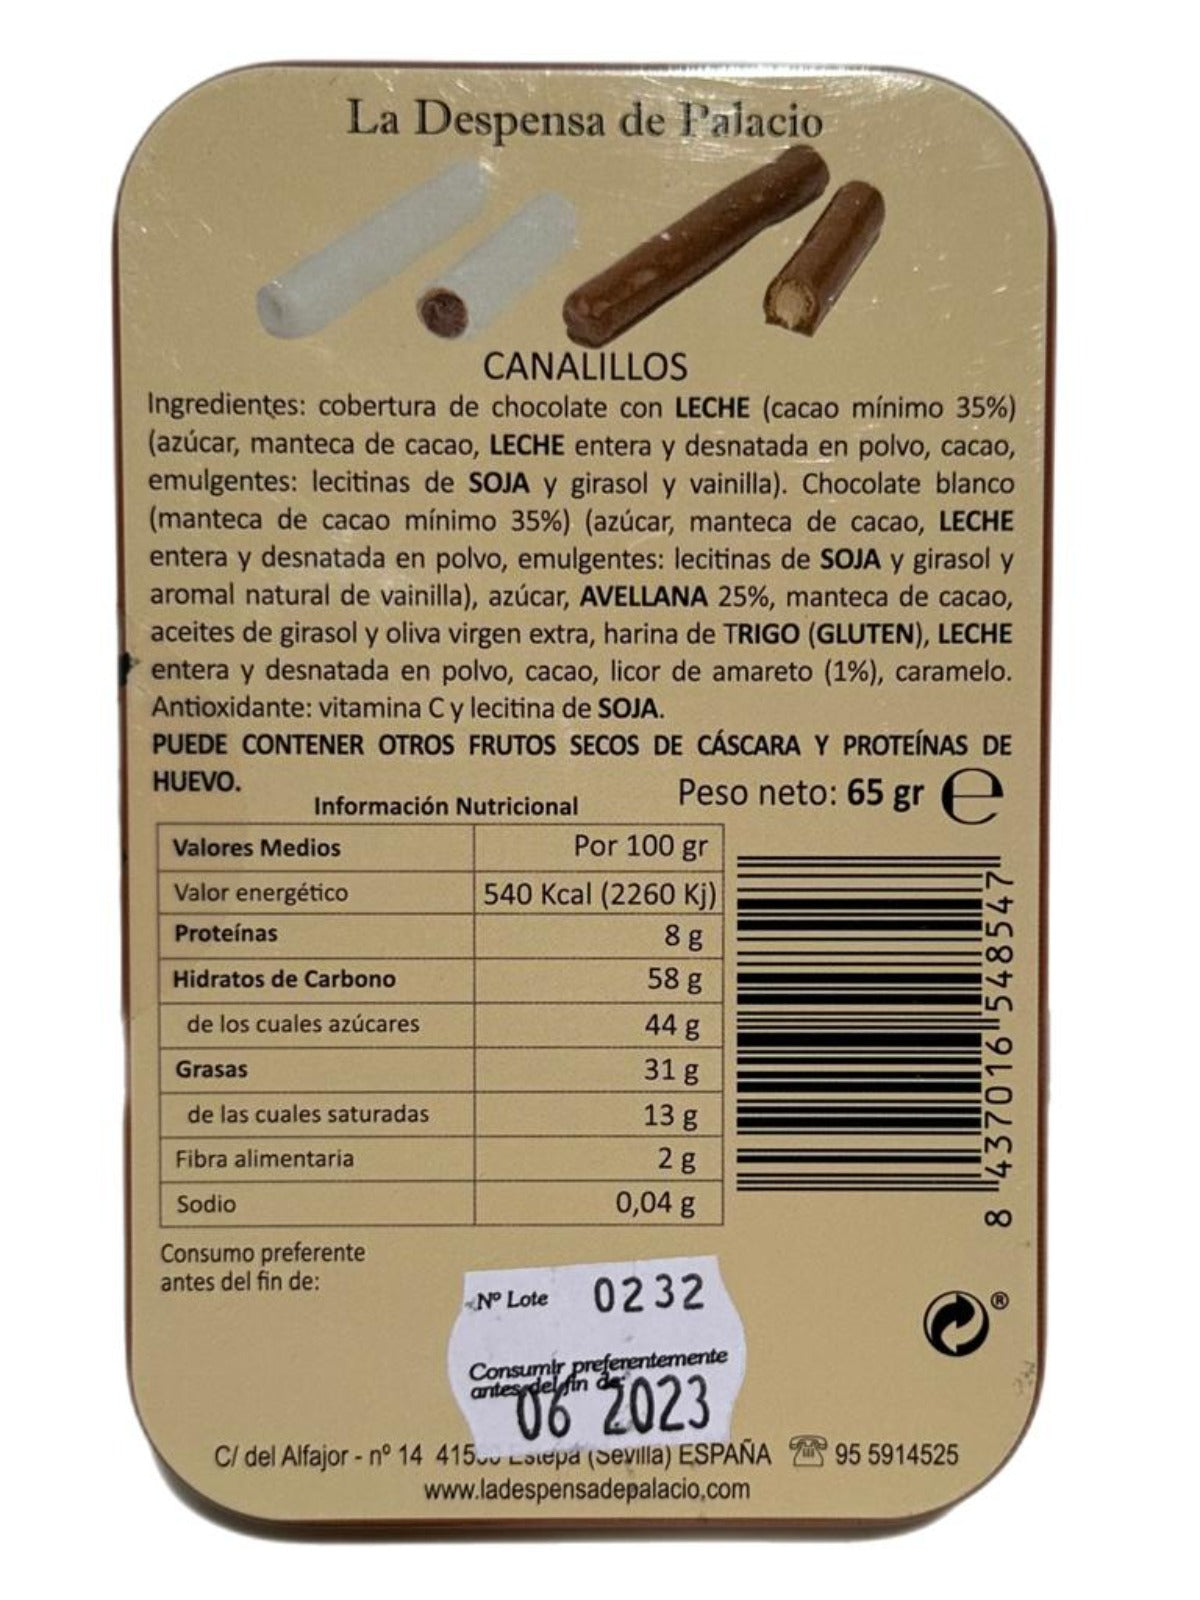 La Despensa de Palacio Canalillos Spanish Chocolate Cigars in Decorative Tin—La Conversación 65g